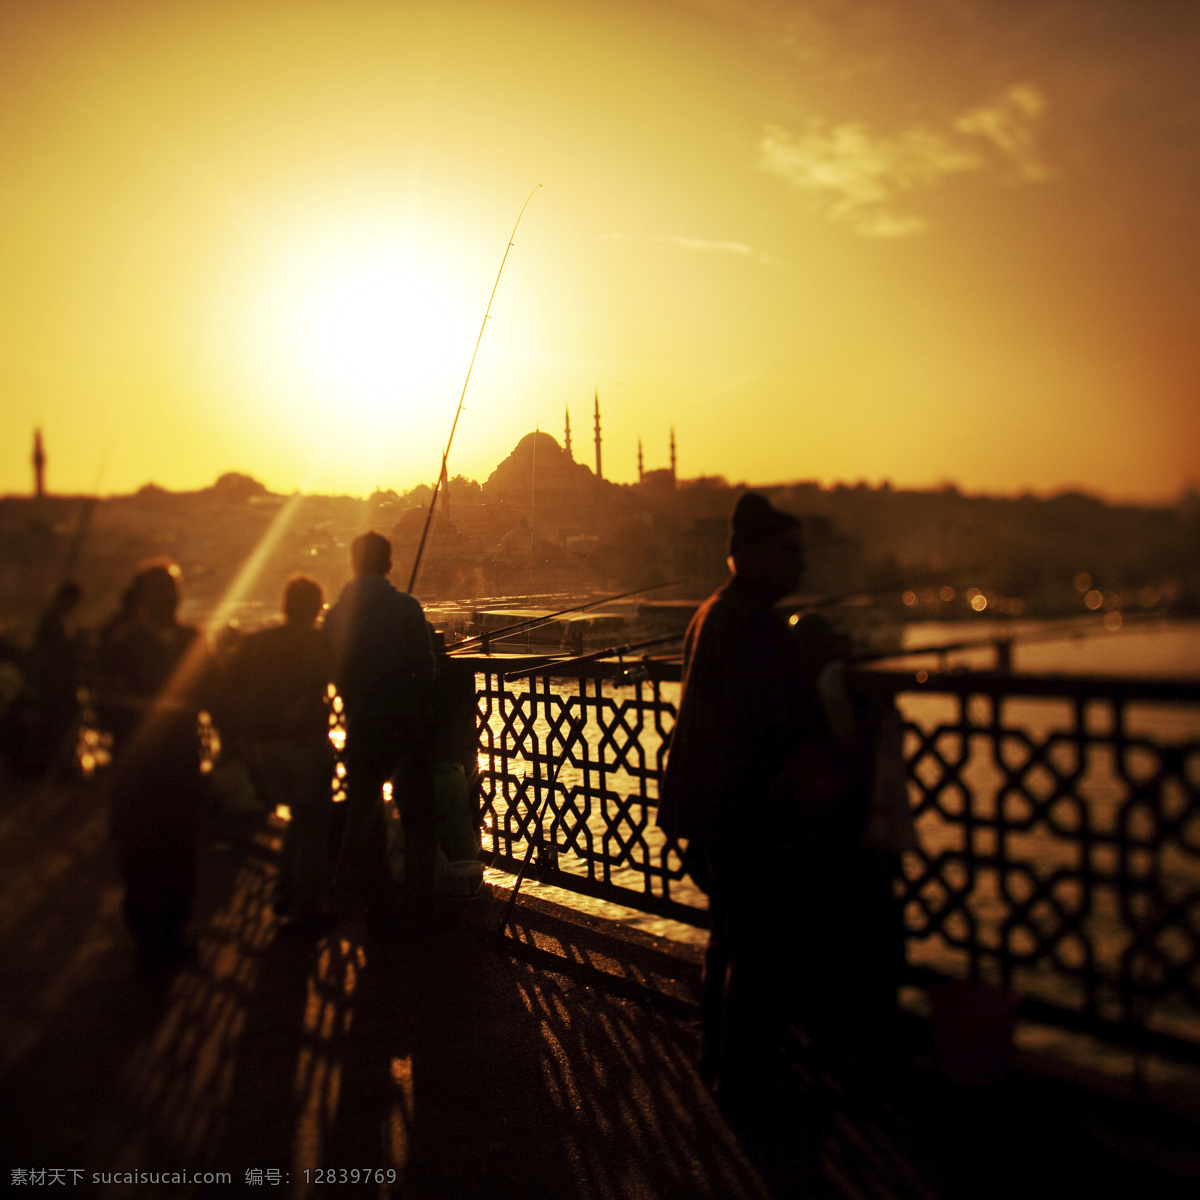 黄昏 时 土耳其 风景 土耳其风景 伊斯坦布尔 黄昏美景 蓝色清真寺 建筑风景 城市风景 美丽风景 其他风光 风景图片